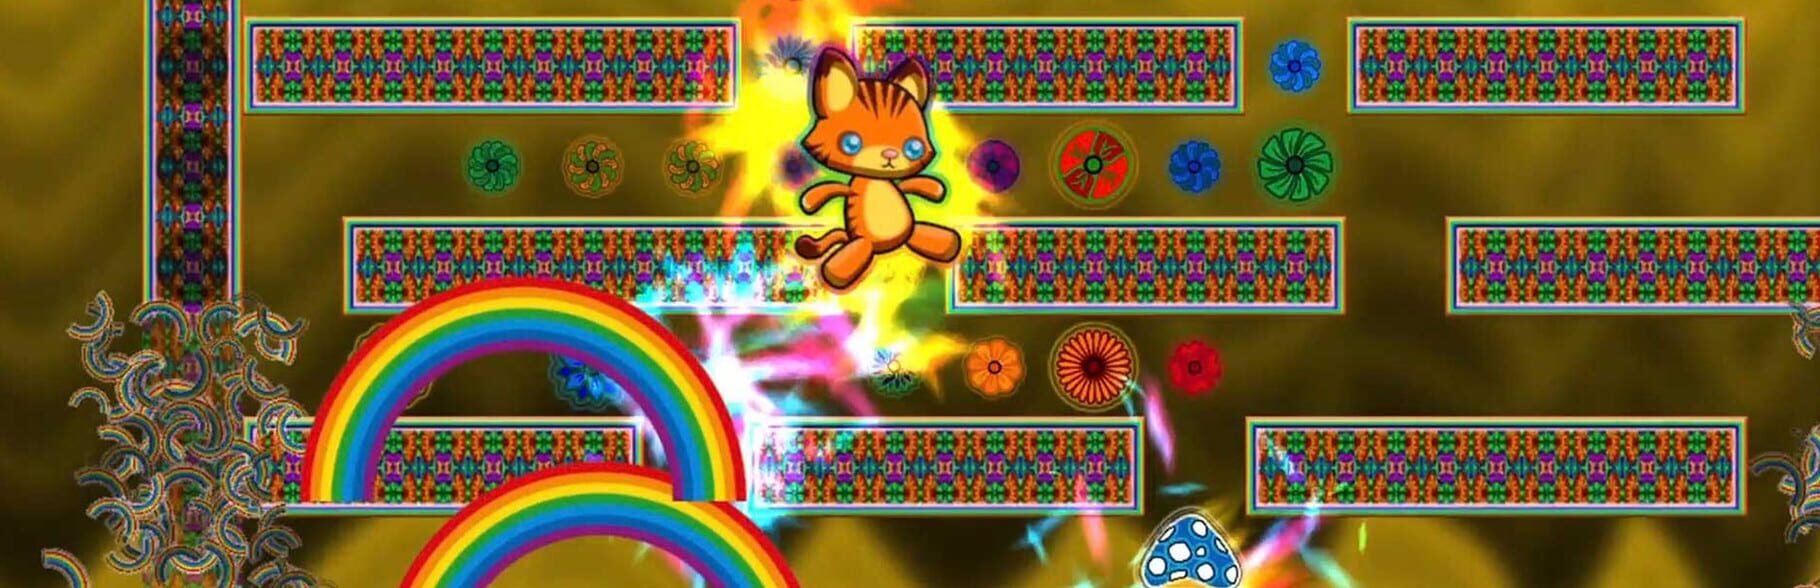 Arte - Kitty Rainbow